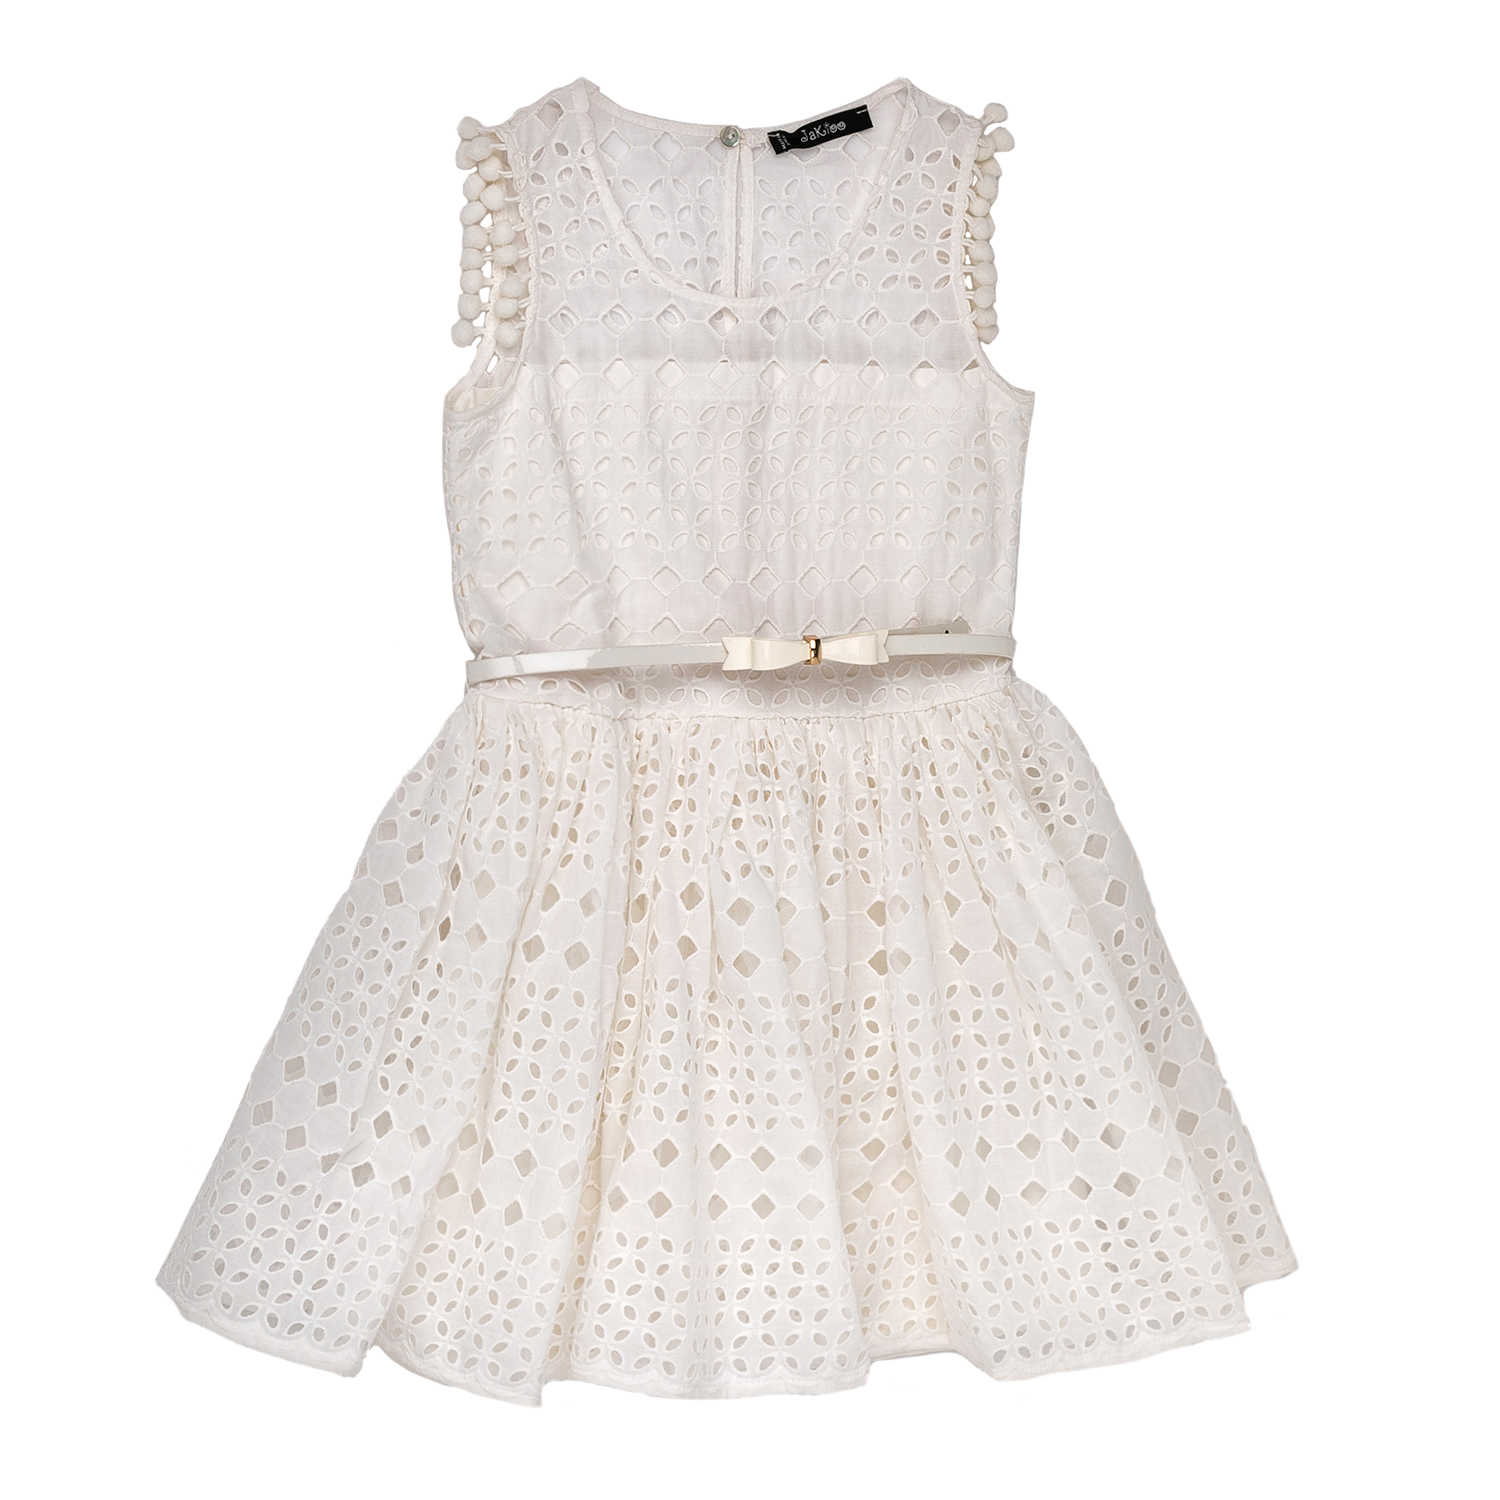 Παιδικά/Girls/Ρούχα/Φορέματα Κοντομάνικα-Αμάνικα JAKIOO - Παιδικό αμάνικο φόρεμα JAKIOO λευκό